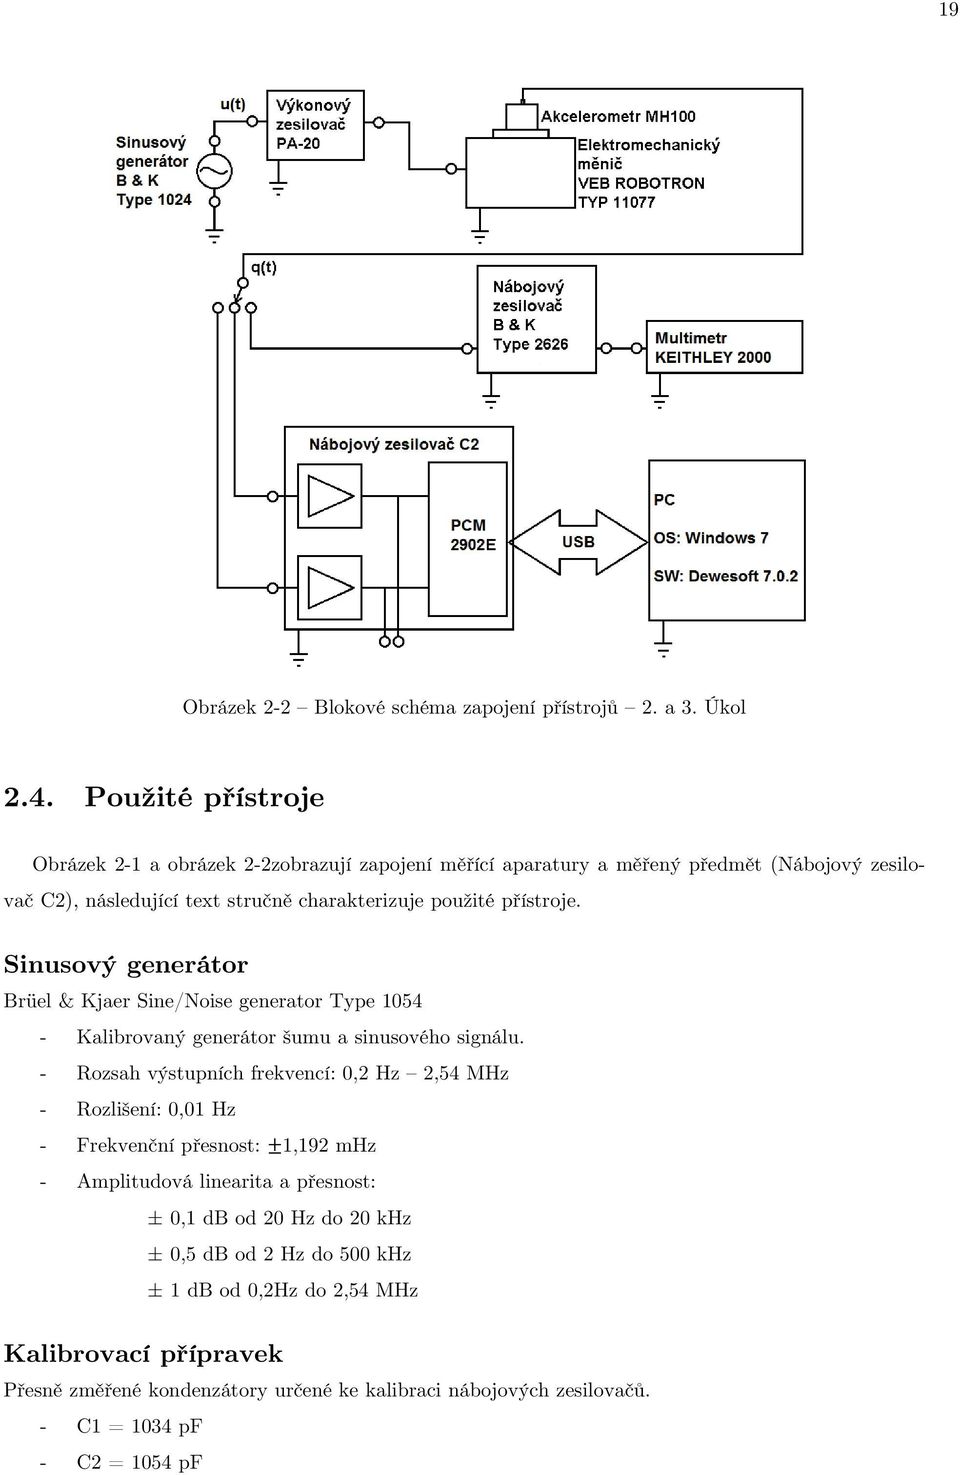 přístroje. Sinusový generátor Brüel & Kjaer Sine/Noise generator Type 1054 - Kalibrovaný generátor šumu a sinusového signálu.